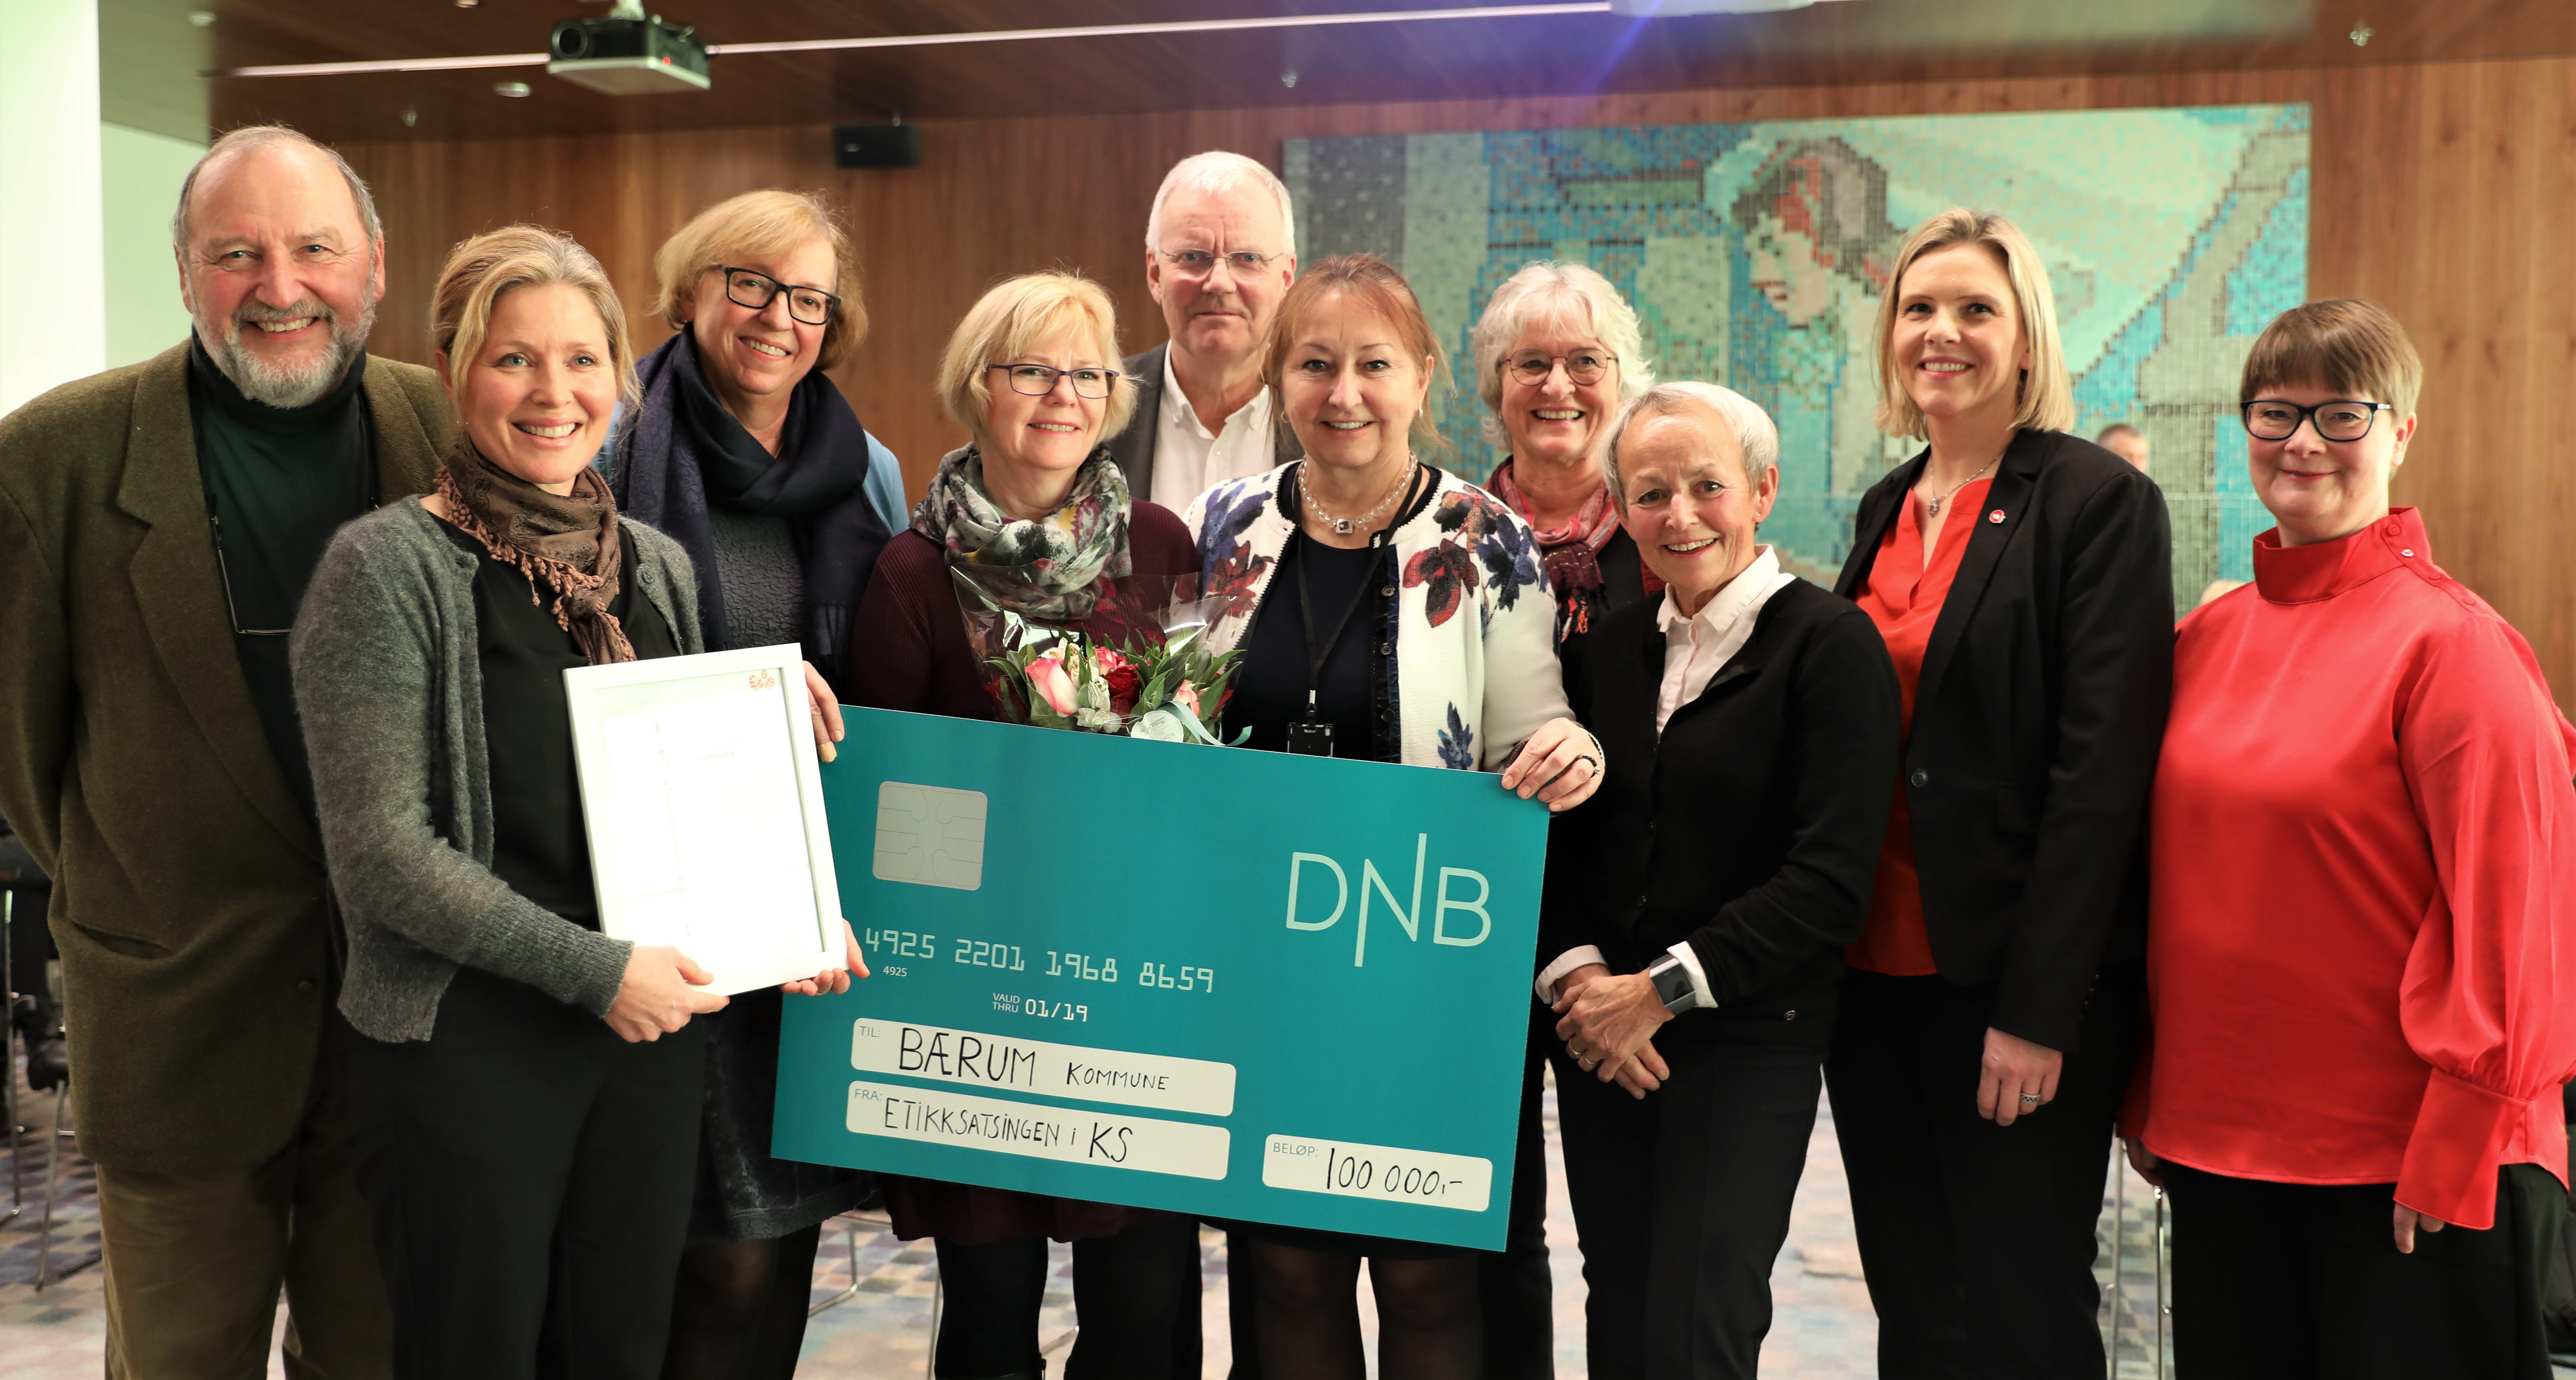 Bærum kommune vant Etikkprisen 2019